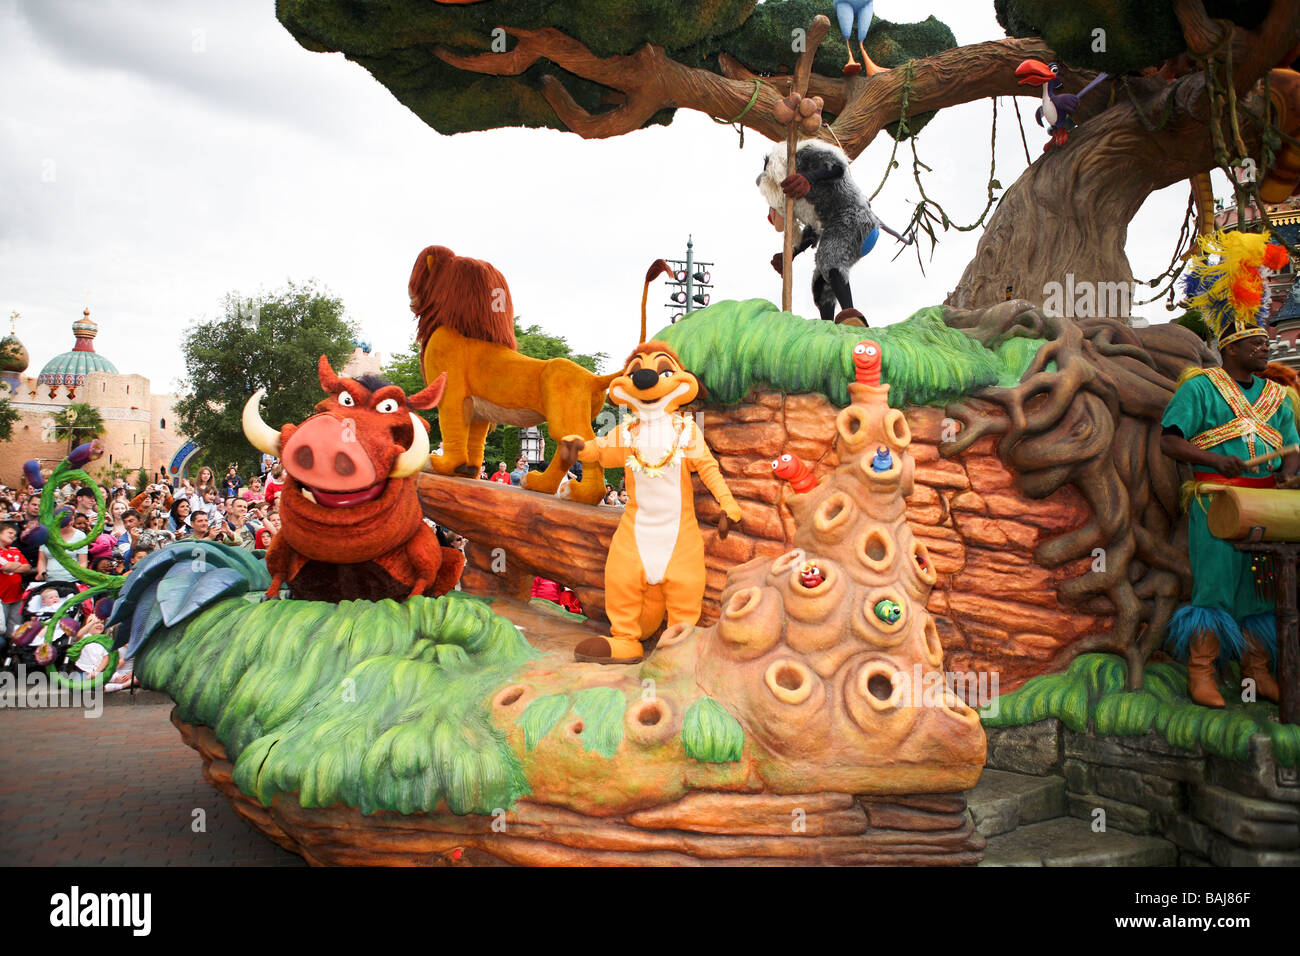 France Paris Euro Disney entertainment park Simba Stock Photo